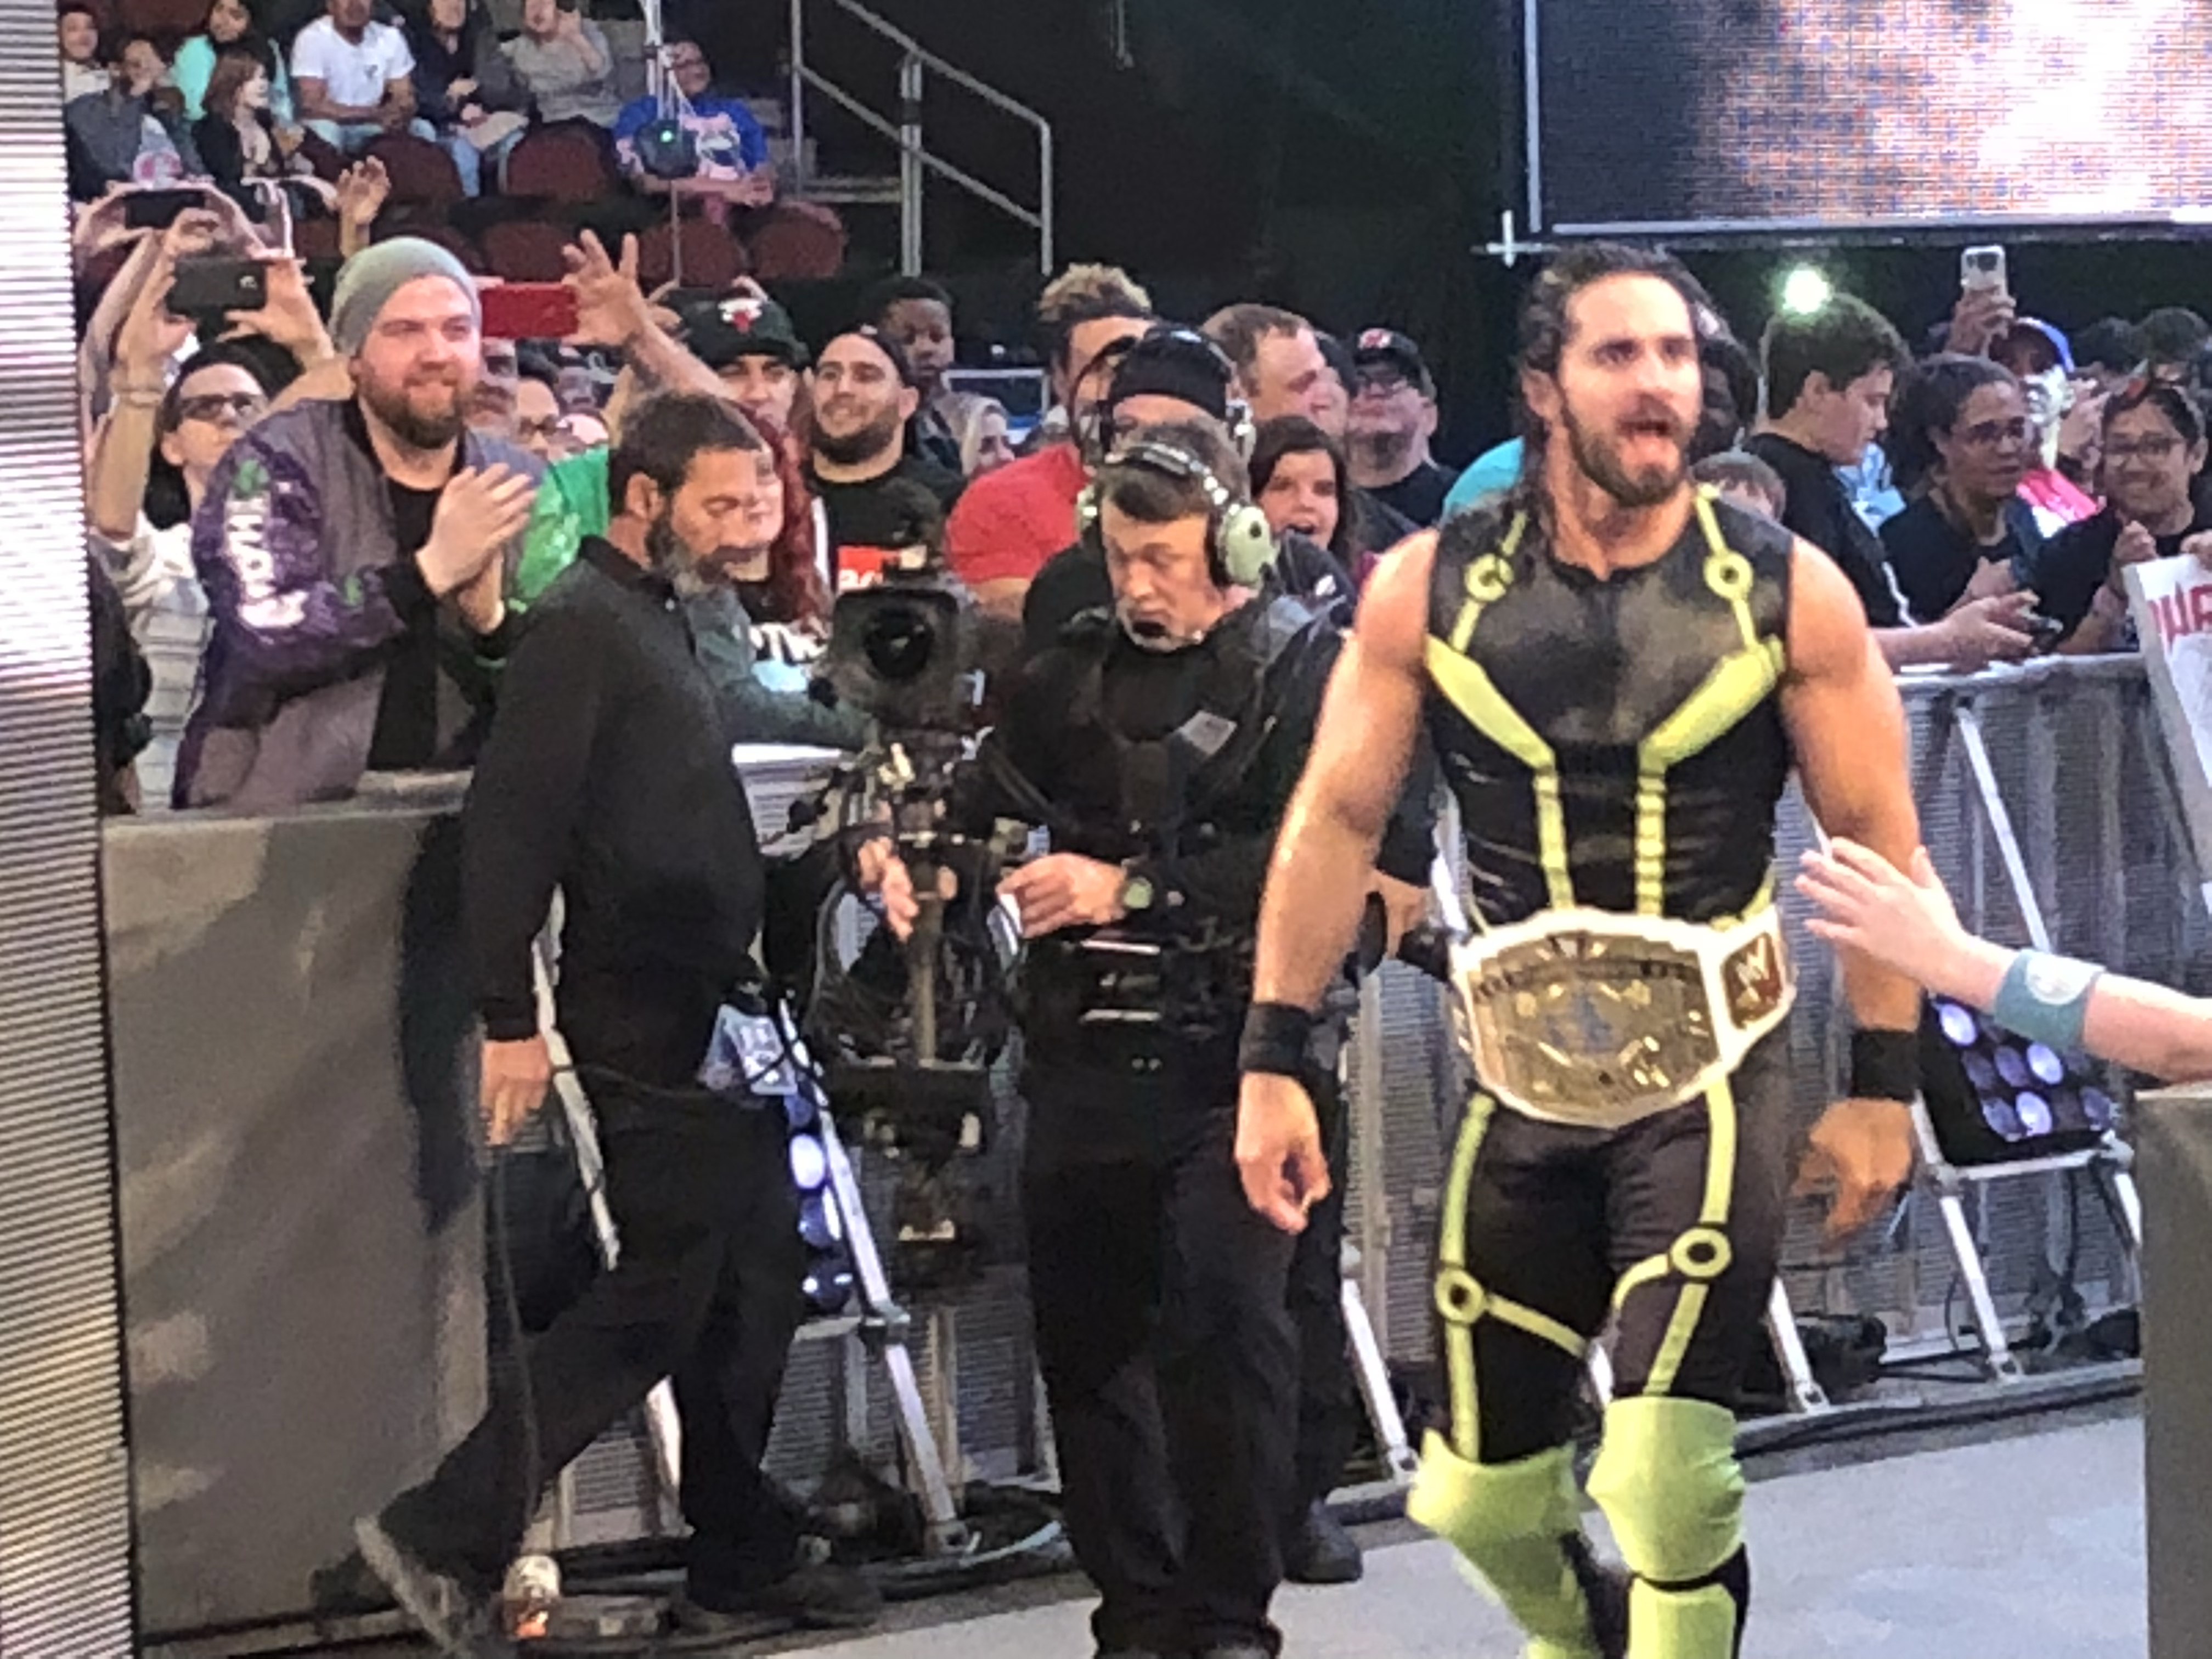 WWE Backlash 2018